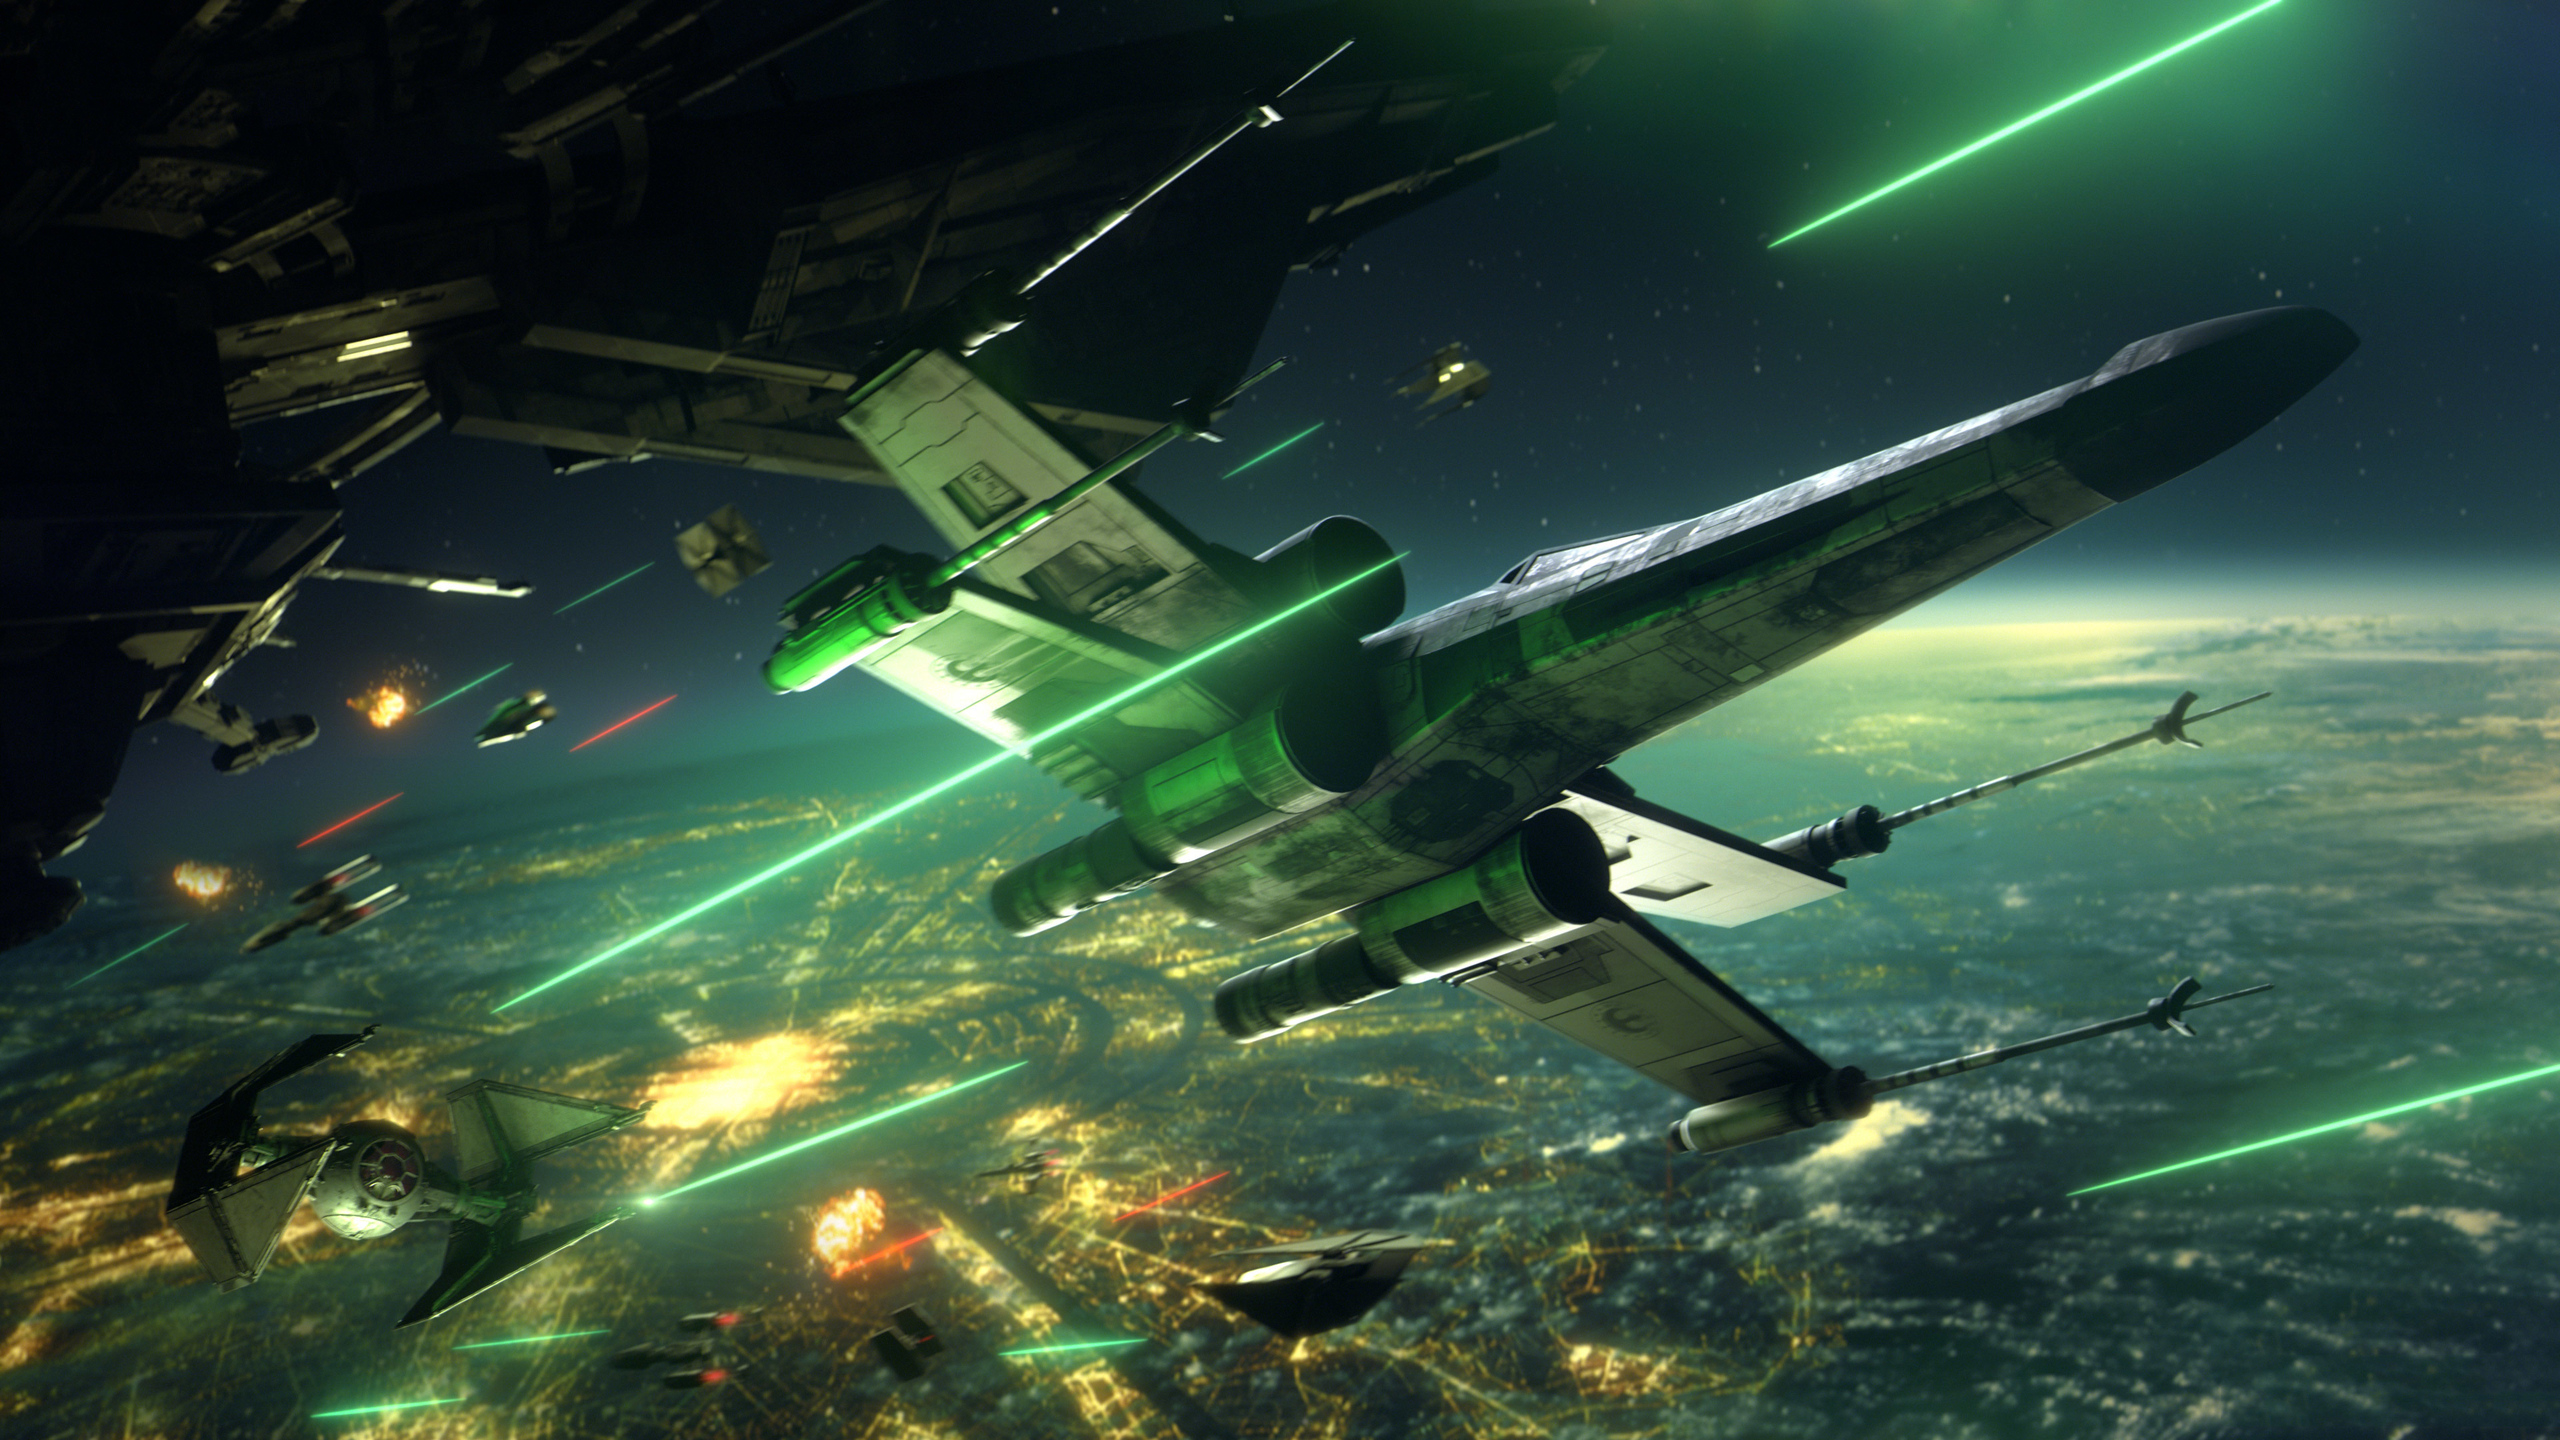 Hãy cùng tham gia chiến đấu trong không gian với Star Wars Squadrons! Bạn sẽ được trải nghiệm cảm giác phiêu lưu và chiến đấu không giới hạn với những chiếc máy bay tốc độ cao. Hãy xem hình ảnh để khám phá thêm về trò chơi này nhé!